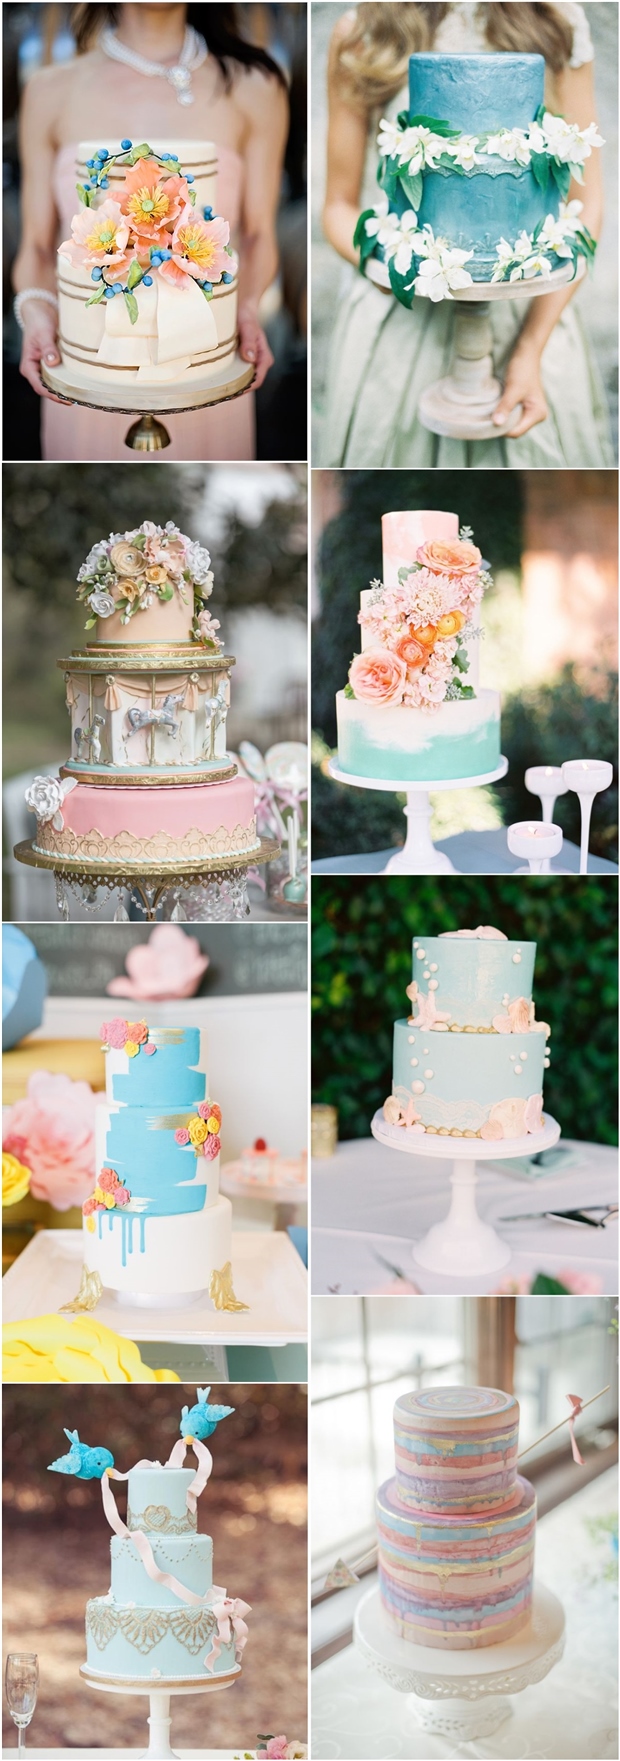 Pastel Whimsical Wedding Cakes